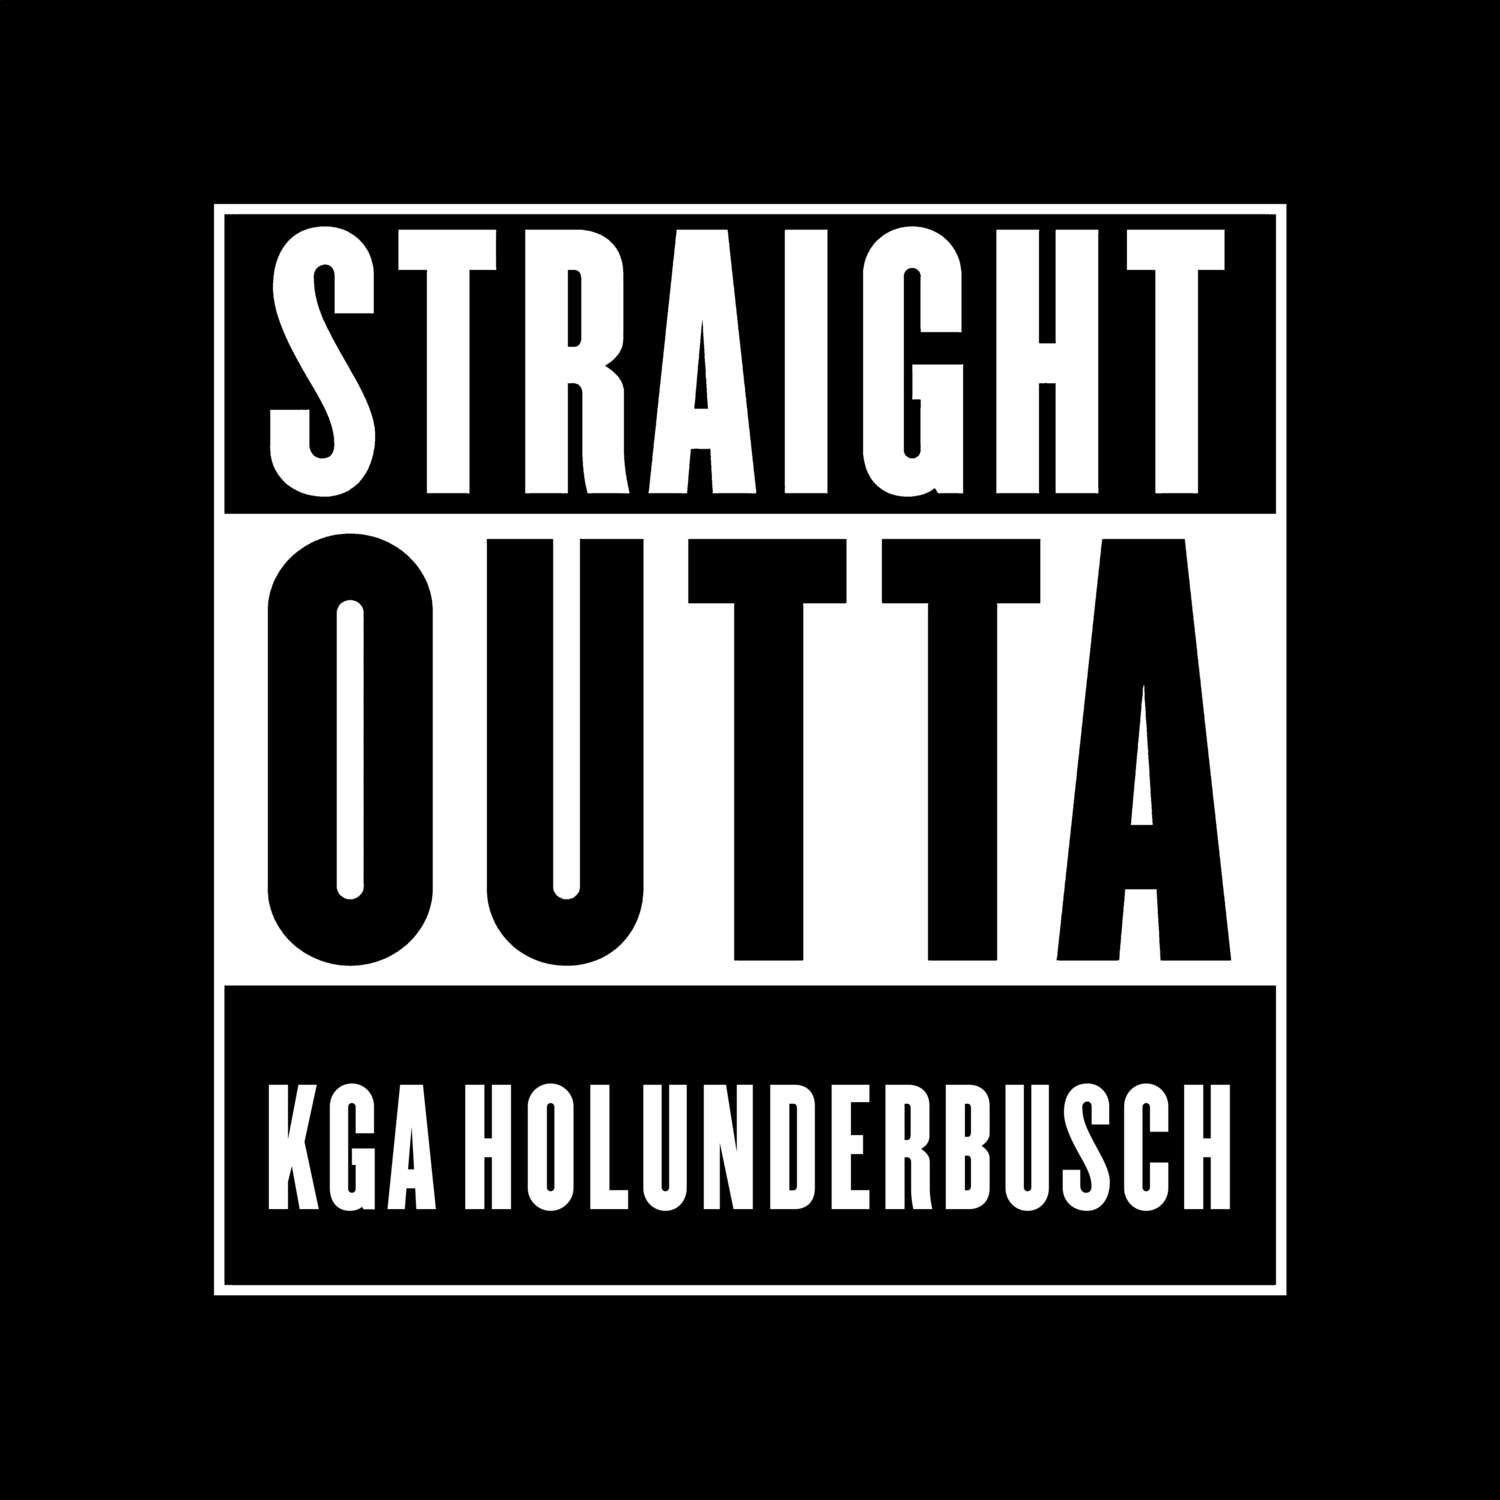 KGA Holunderbusch T-Shirt »Straight Outta«